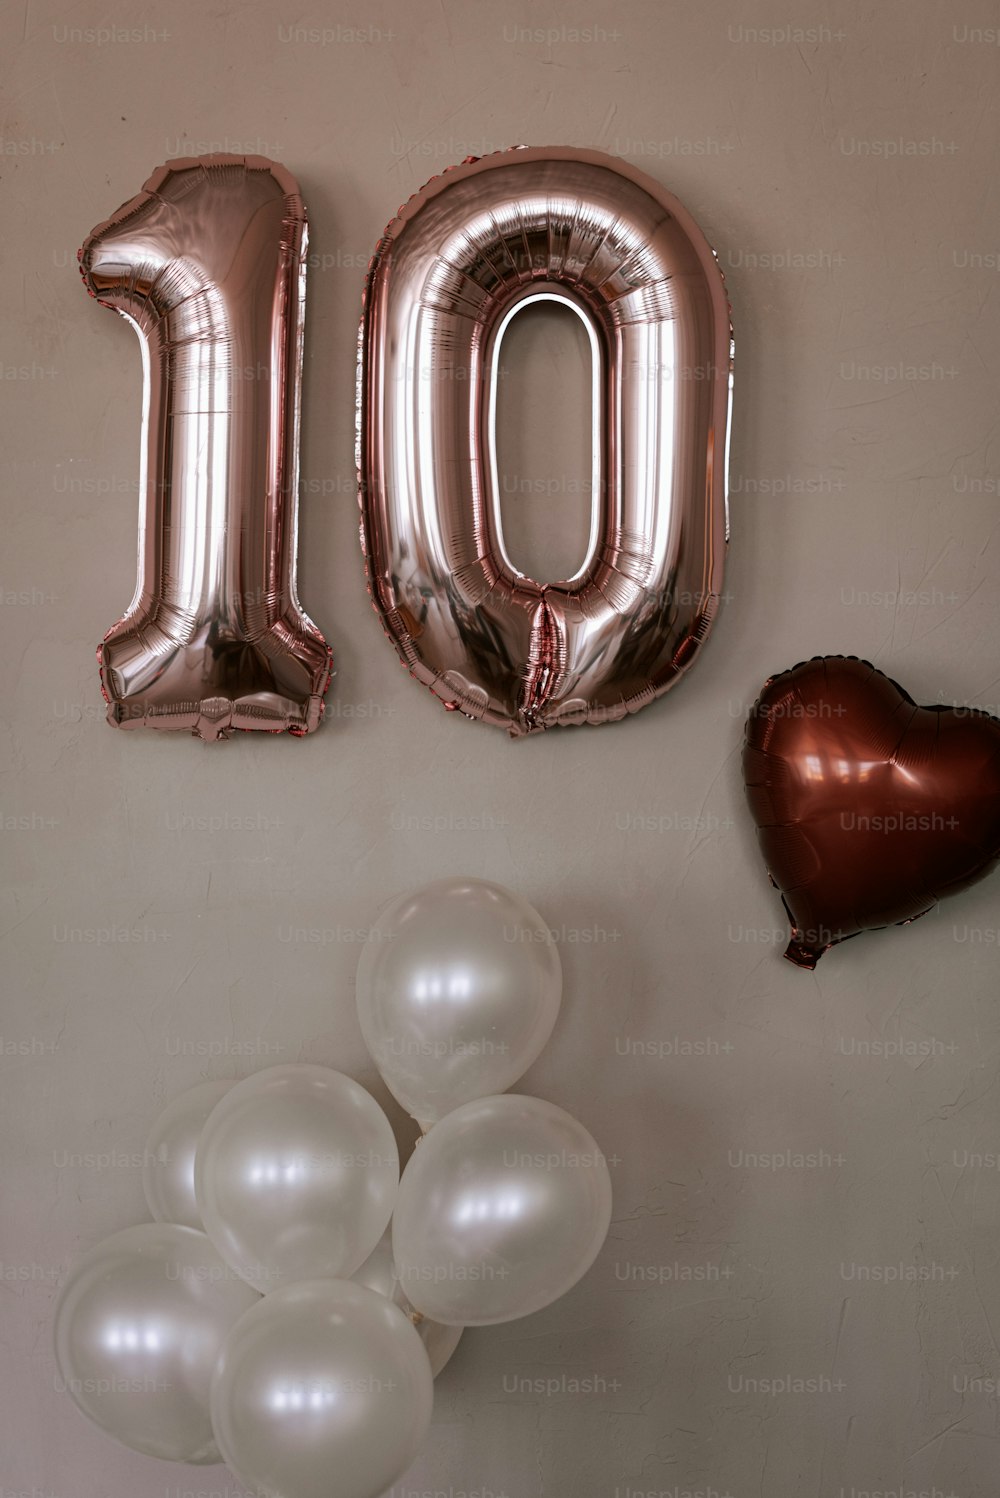 Ein Ballon mit der Nummer 10 und ein Haufen Luftballons